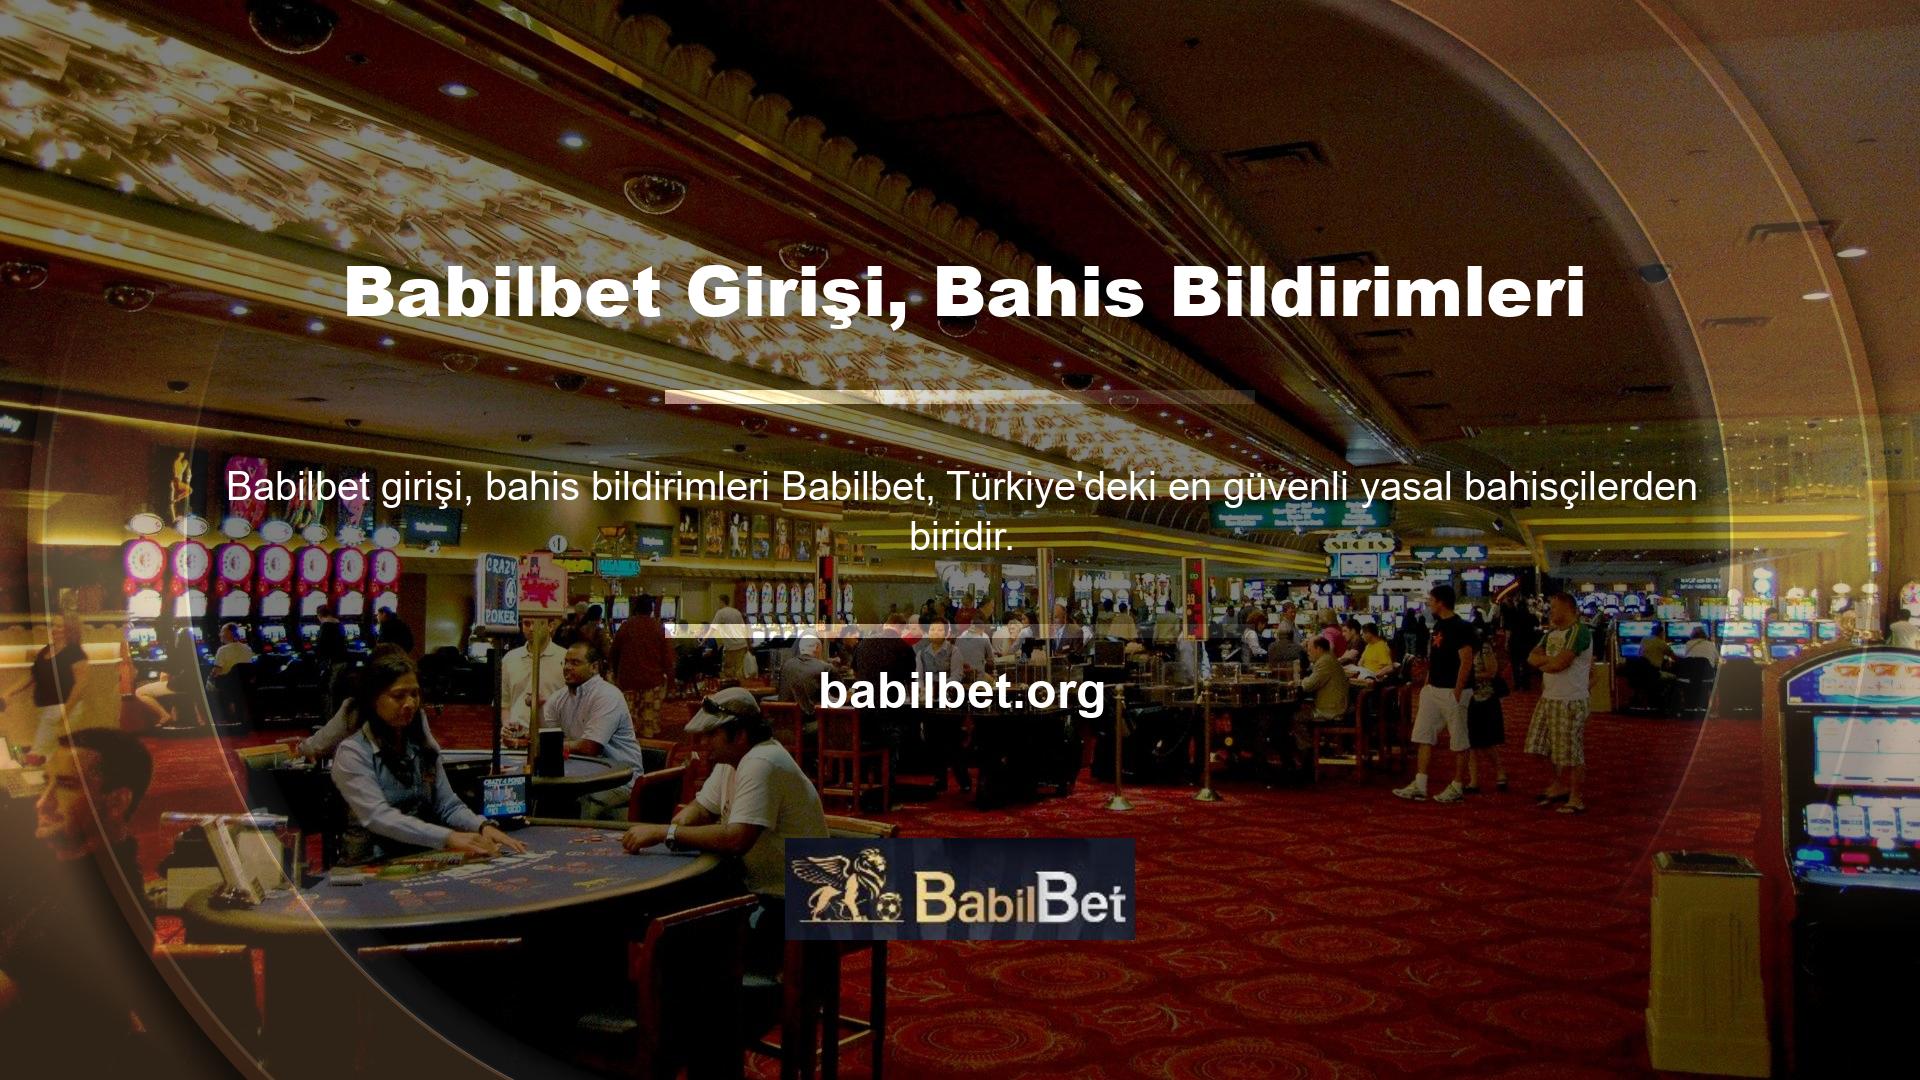 Babilbet, slot oyunlarına ilgi duyanlar için ülkemizdeki en popüler kuruluşlardan biridir